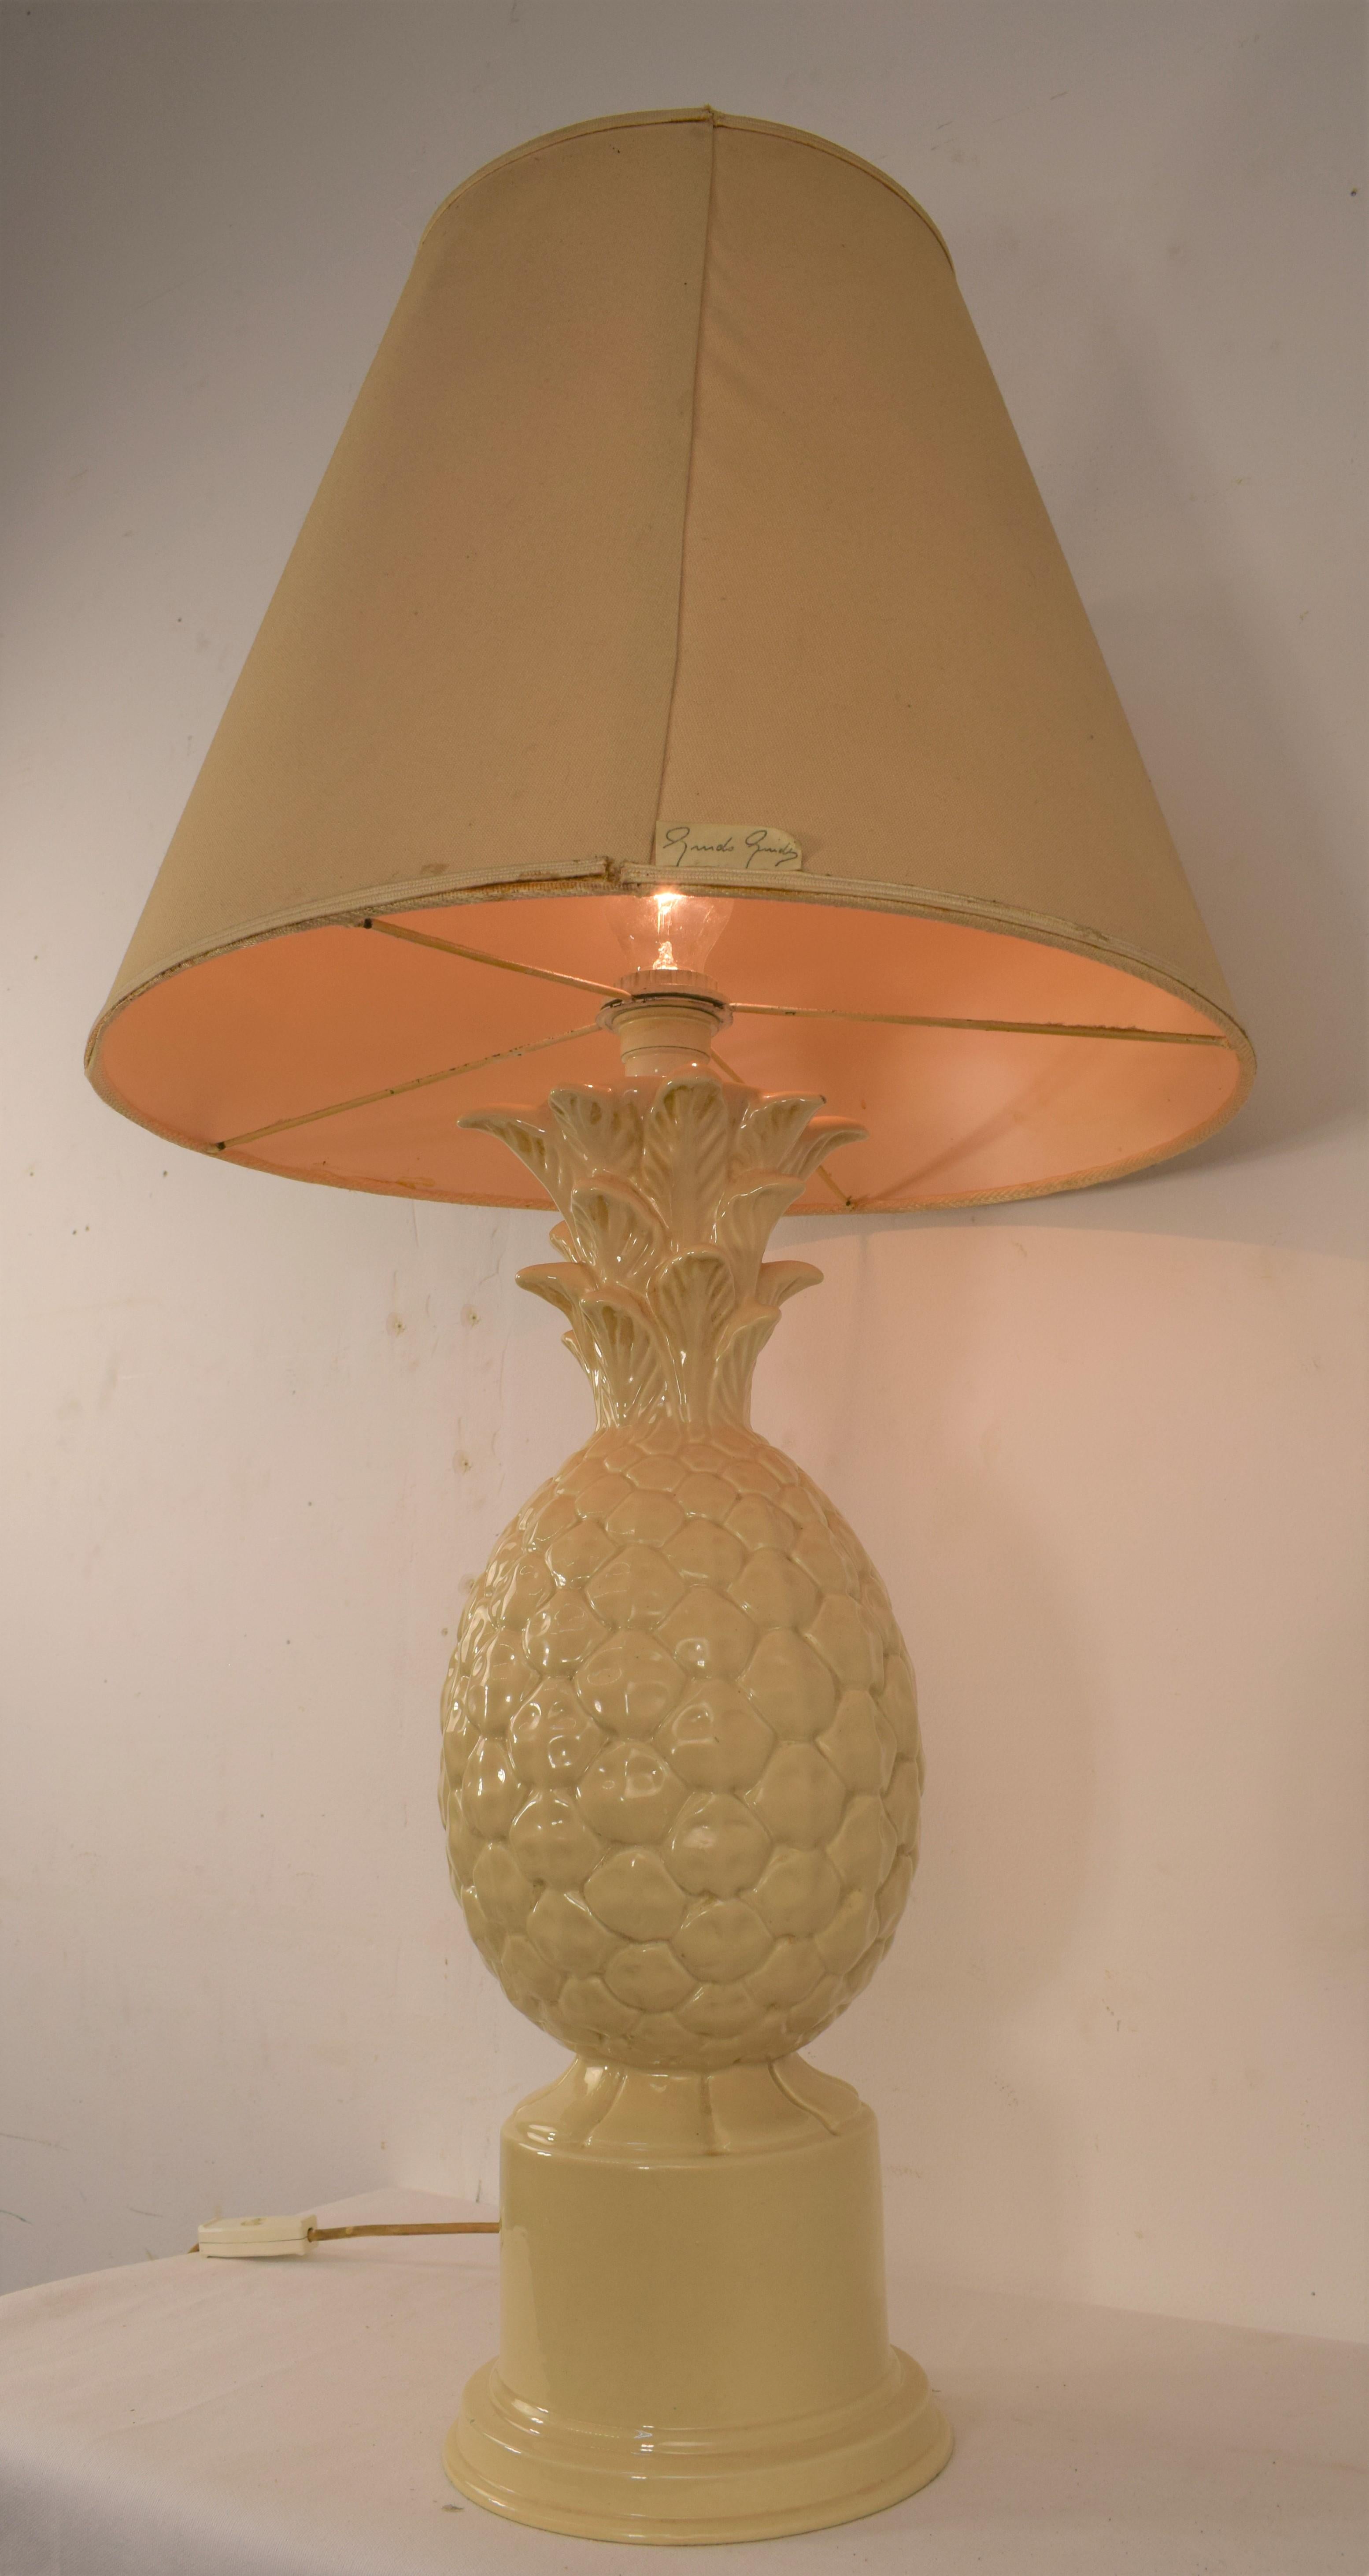 Lampe de table en céramique italienne, années 1960.
Dimensions : H= 90 cm ; P= 50 cm : H= 90 cm ; D= 50 cm
Lampe seule : H=52 cm ; D=20 cm.